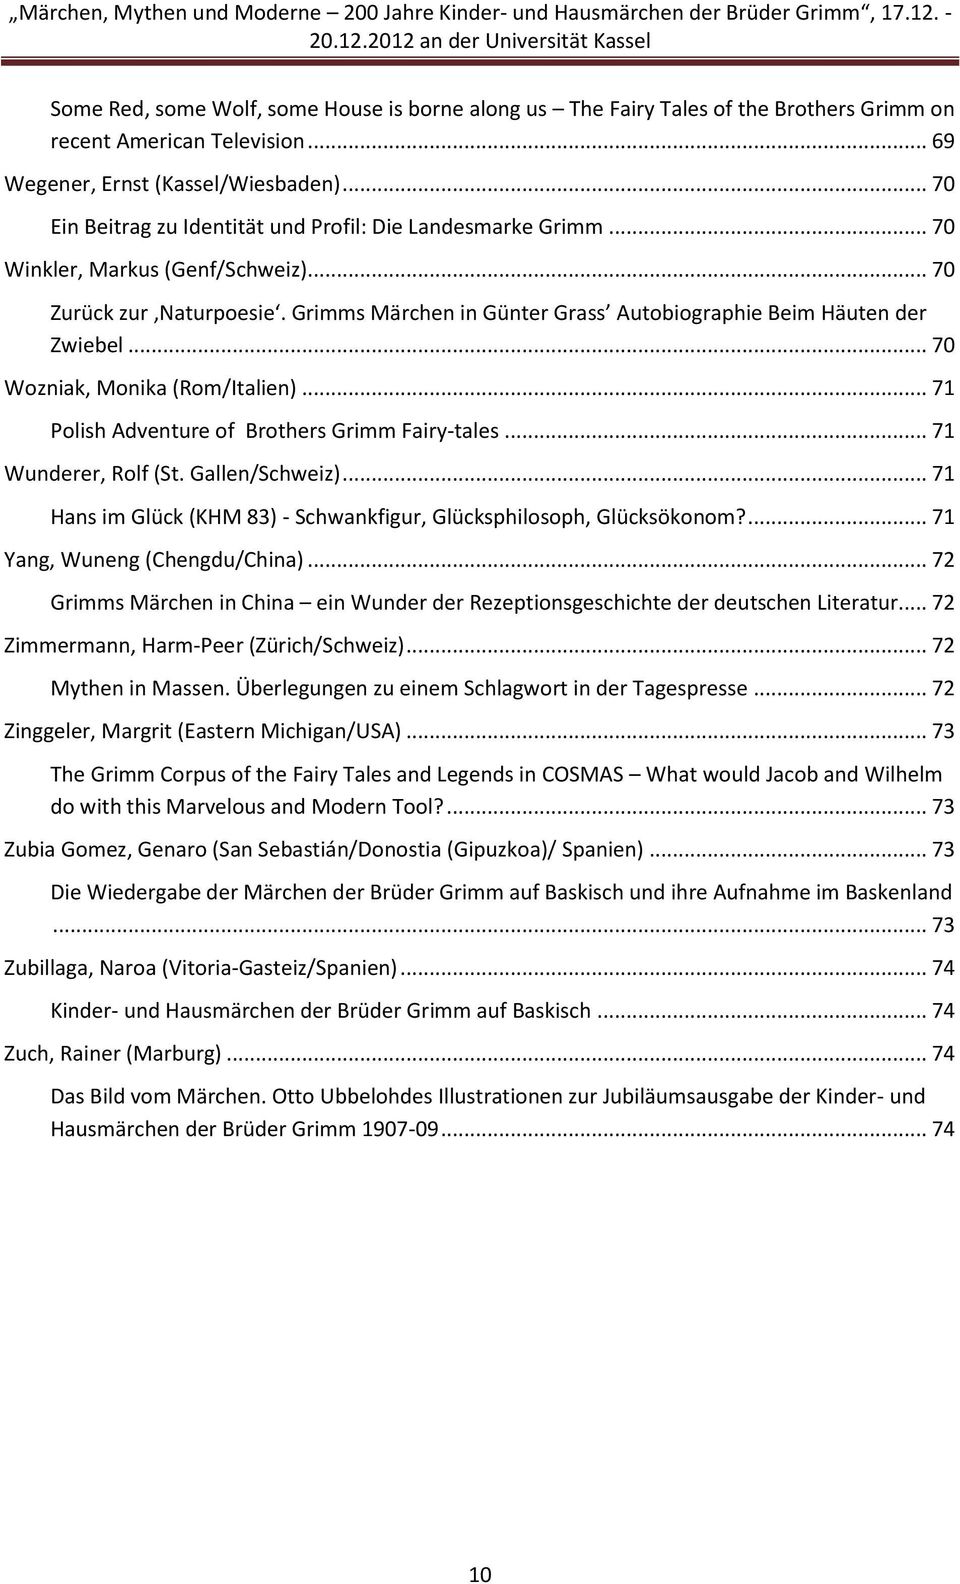 Marchen Mythen Und Moderne 200 Jahre Kinder Und Hausmarchen Der Bruder Grimm An Der Universitat Kassel Pdf Free Download